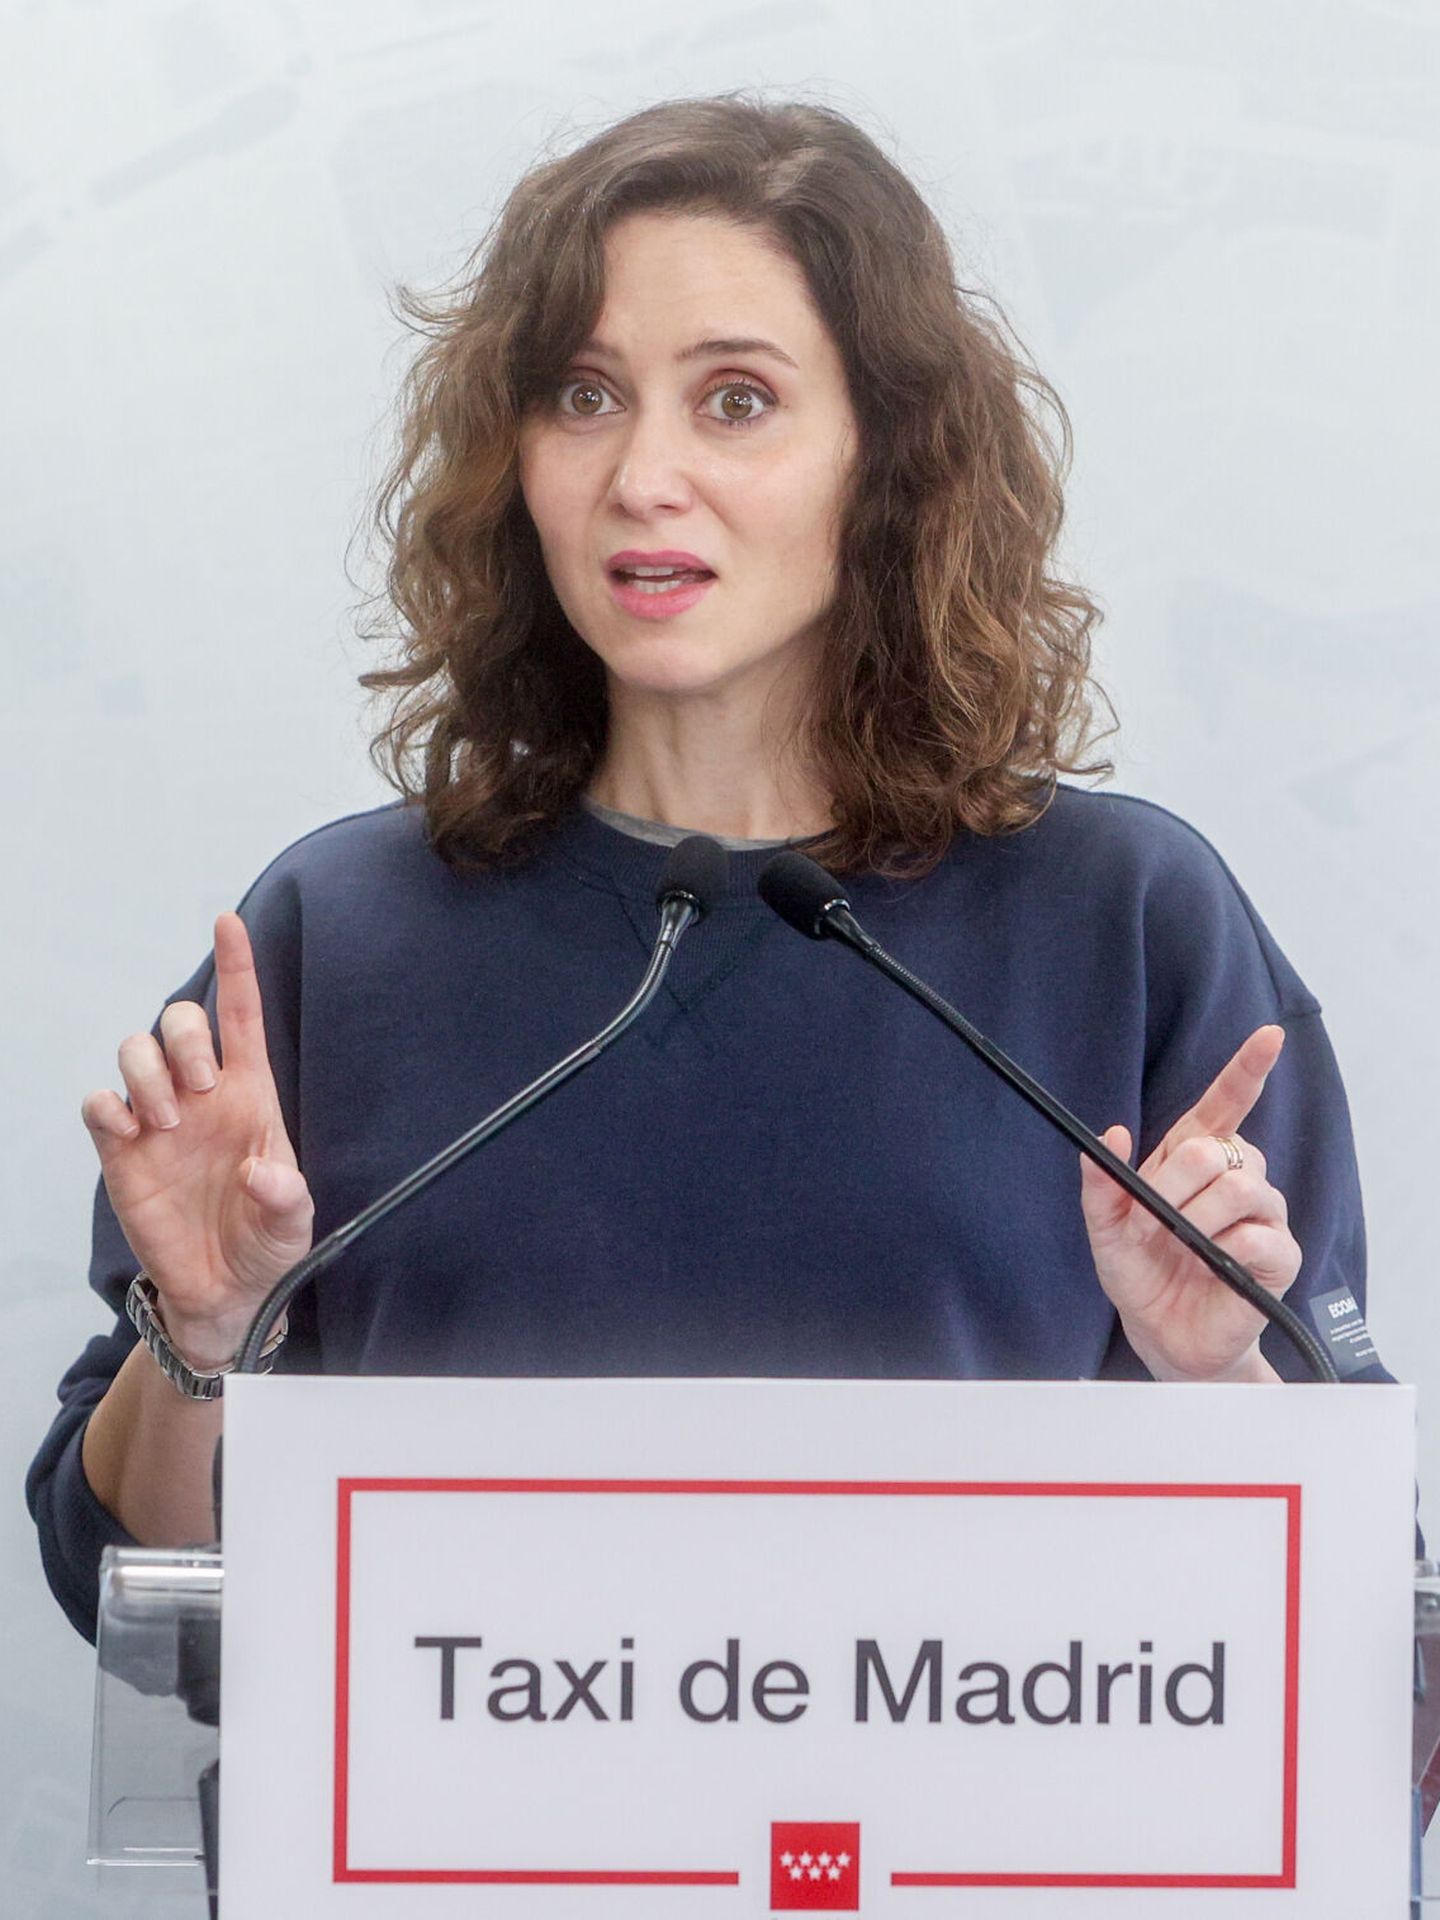 La presidenta de la Comunidad de Madrid, Isabel Díaz Ayuso, interviene durante su visita a la sede de la Asociación Gremial de Auto-Taxi de Madrid. (Europa Press)